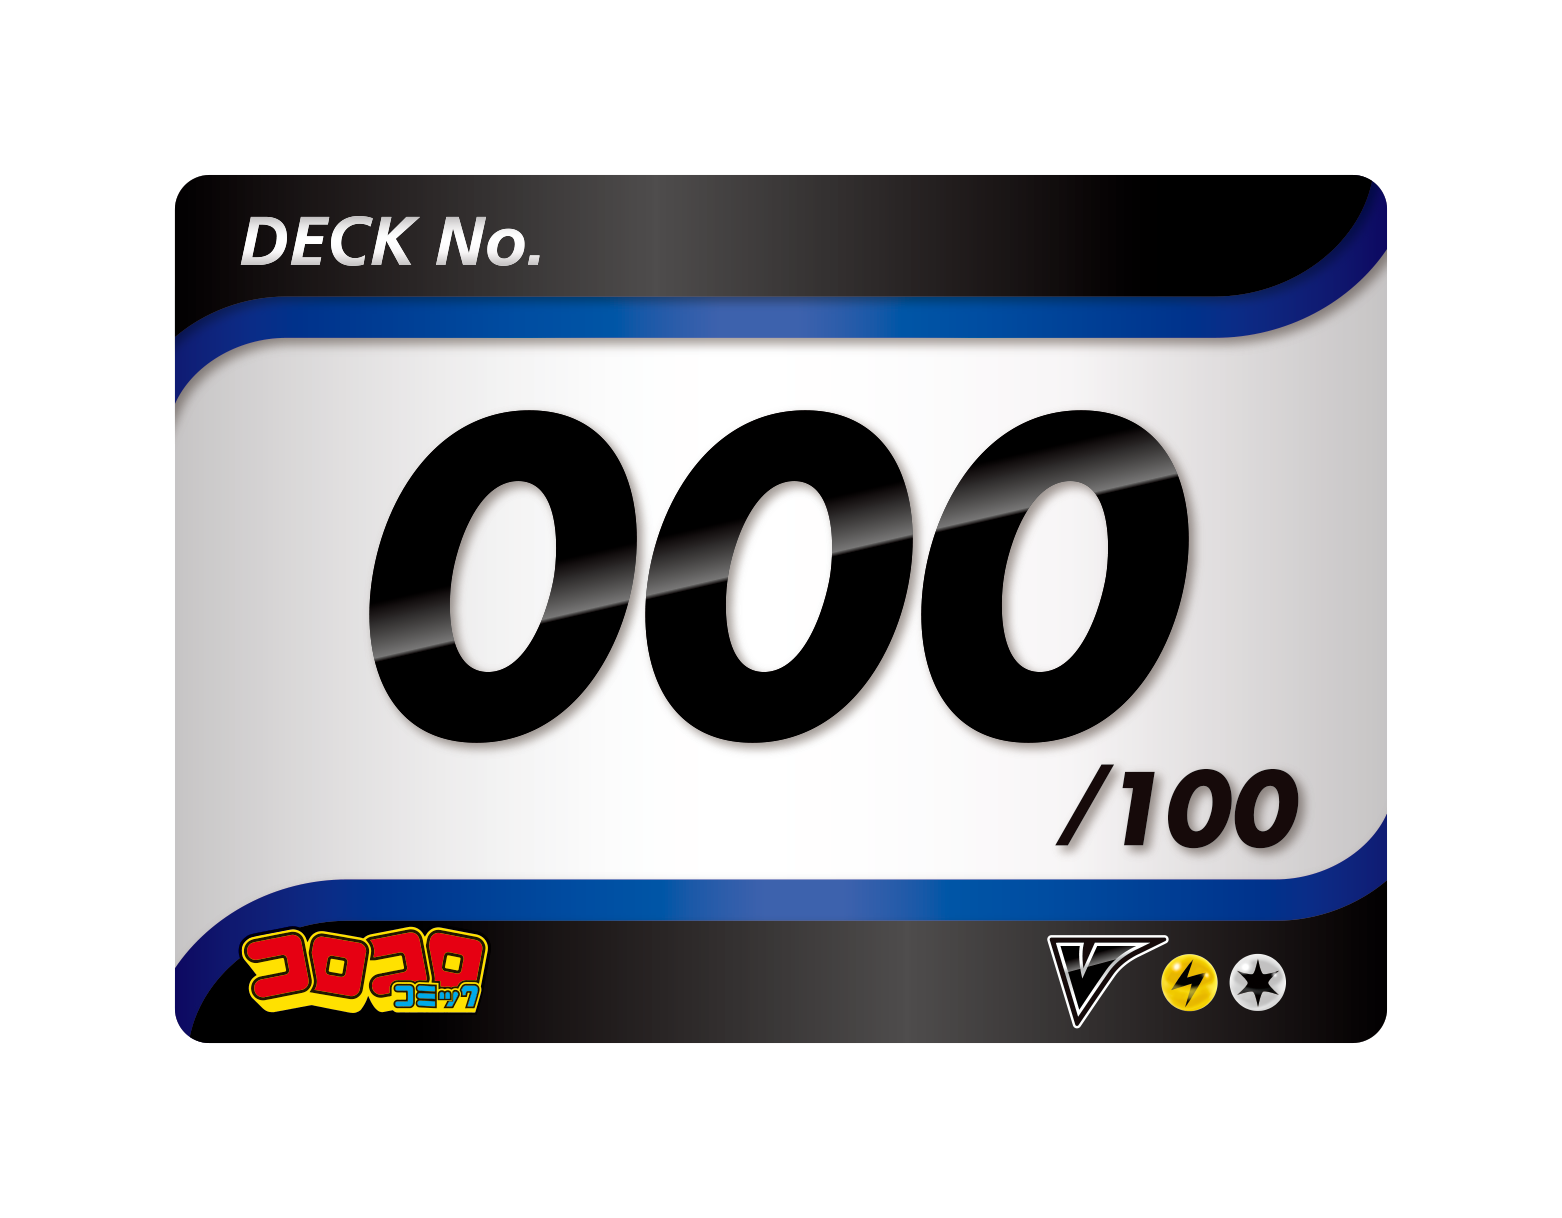 スタートデッキ100 にコロコロコミックver が登場 ポケモンカードゲーム公式ホームページ